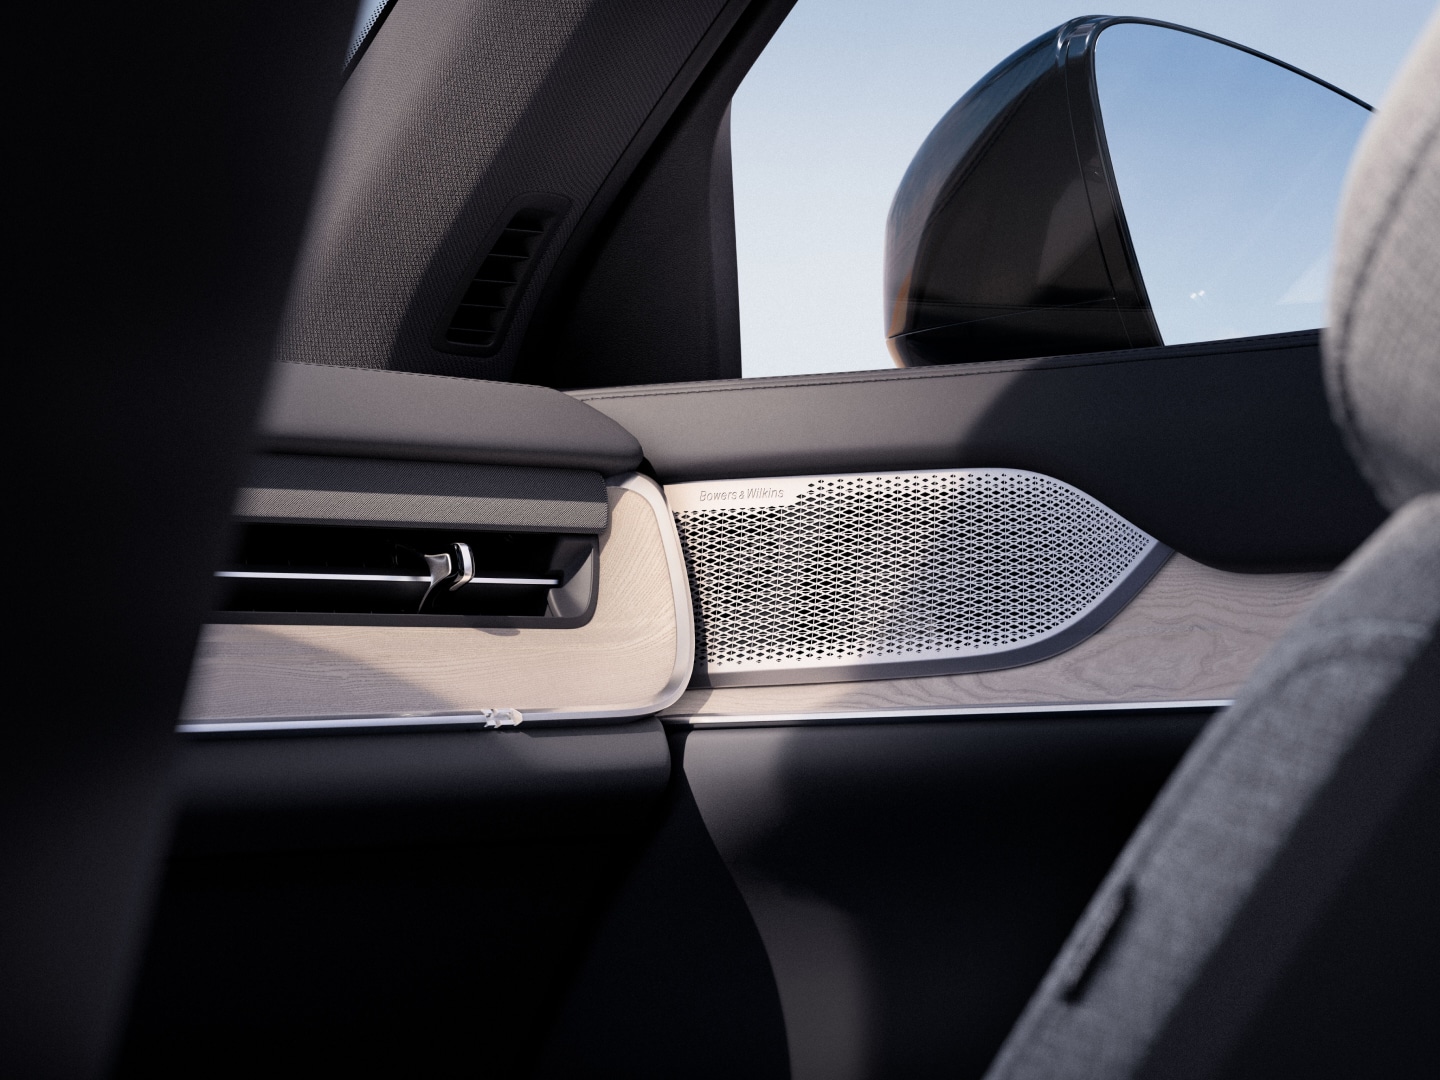 Lautsprechergitter aus Edelstahl von Bowers & Wilkins im Innenraum eines Volvo EX90.